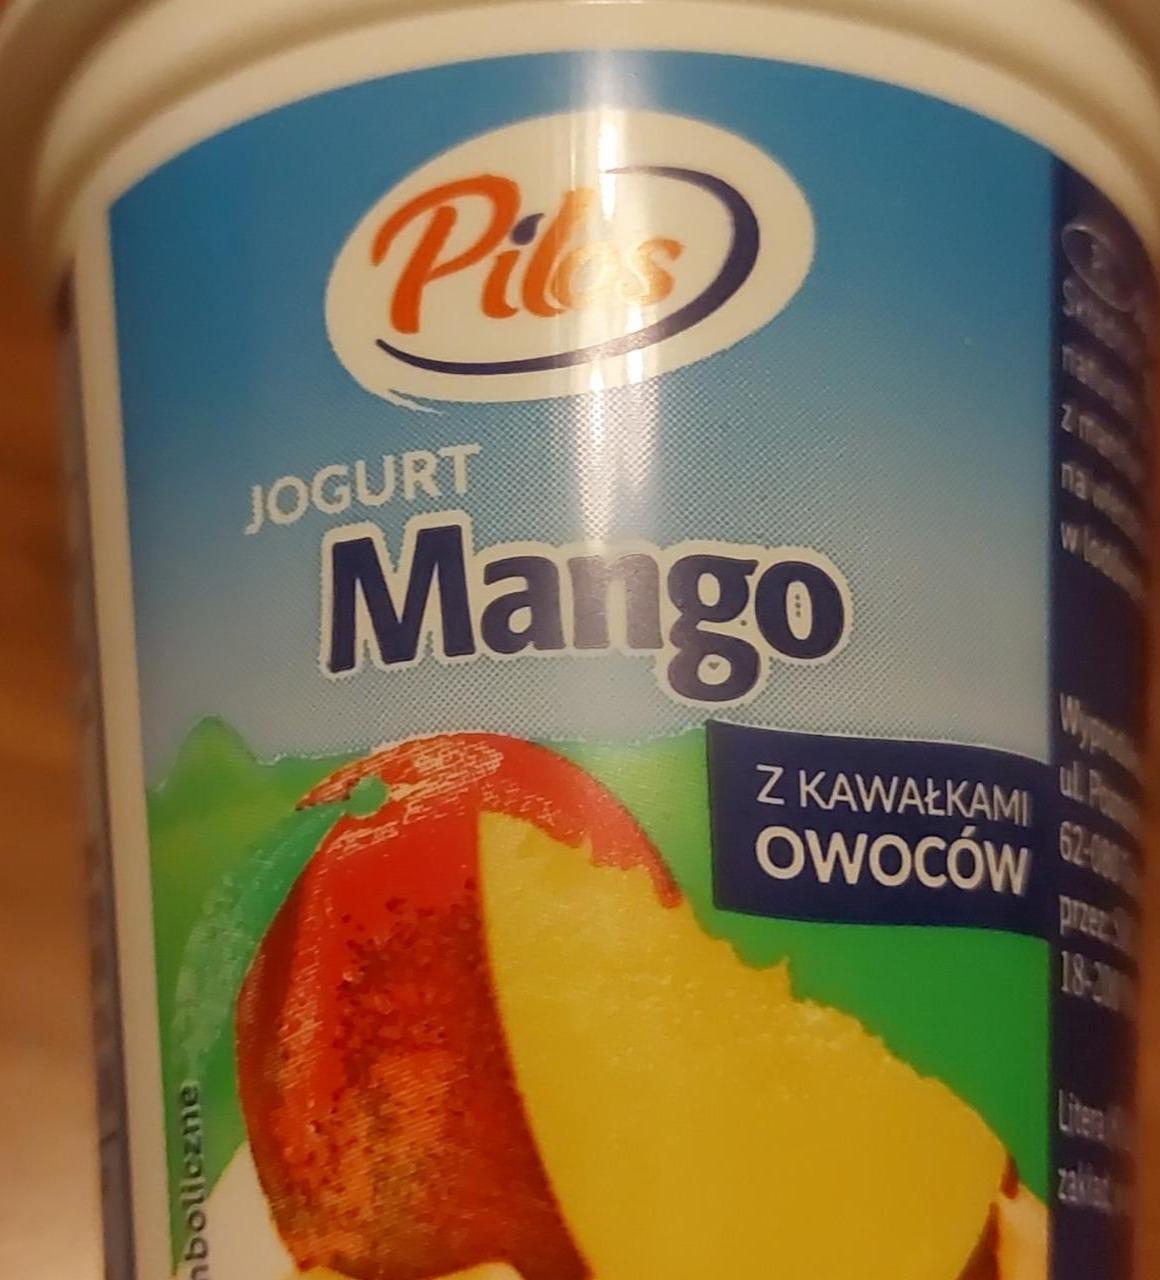 Фото - Йогурт с кусочками фруктов Манго Pilos